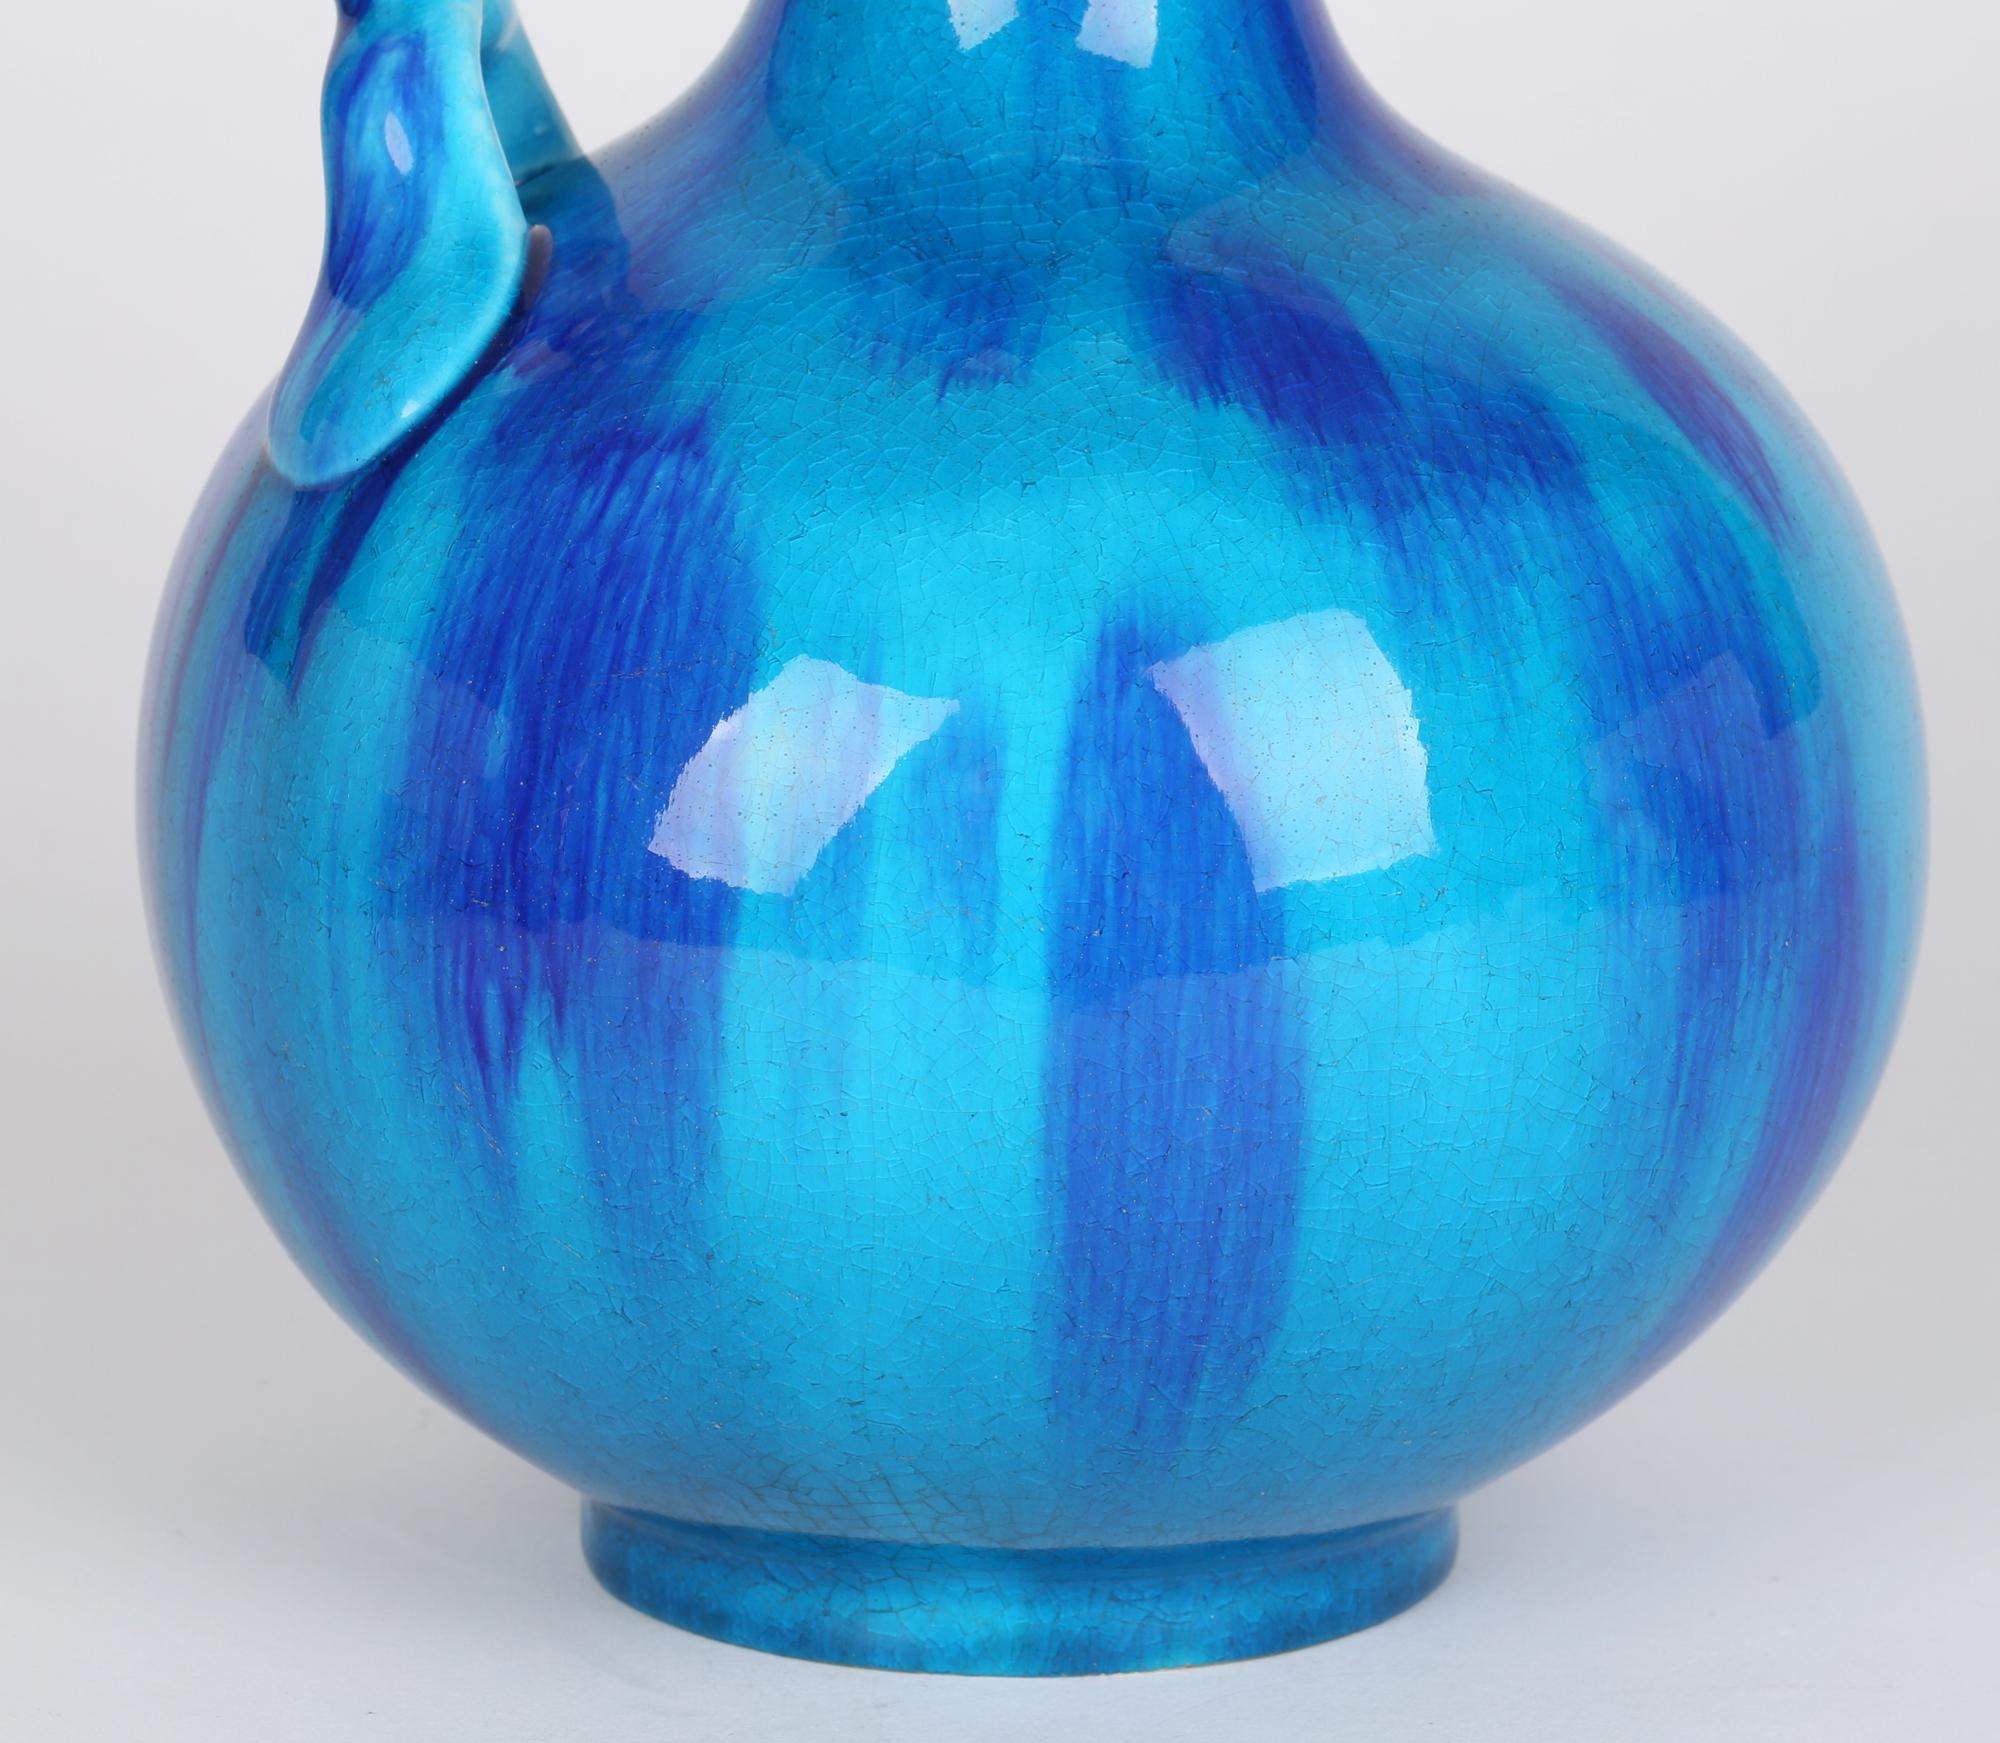 Minton Aesthetic Movement Blue & Turquoise Glazed Handled Art Pottery Vase 3